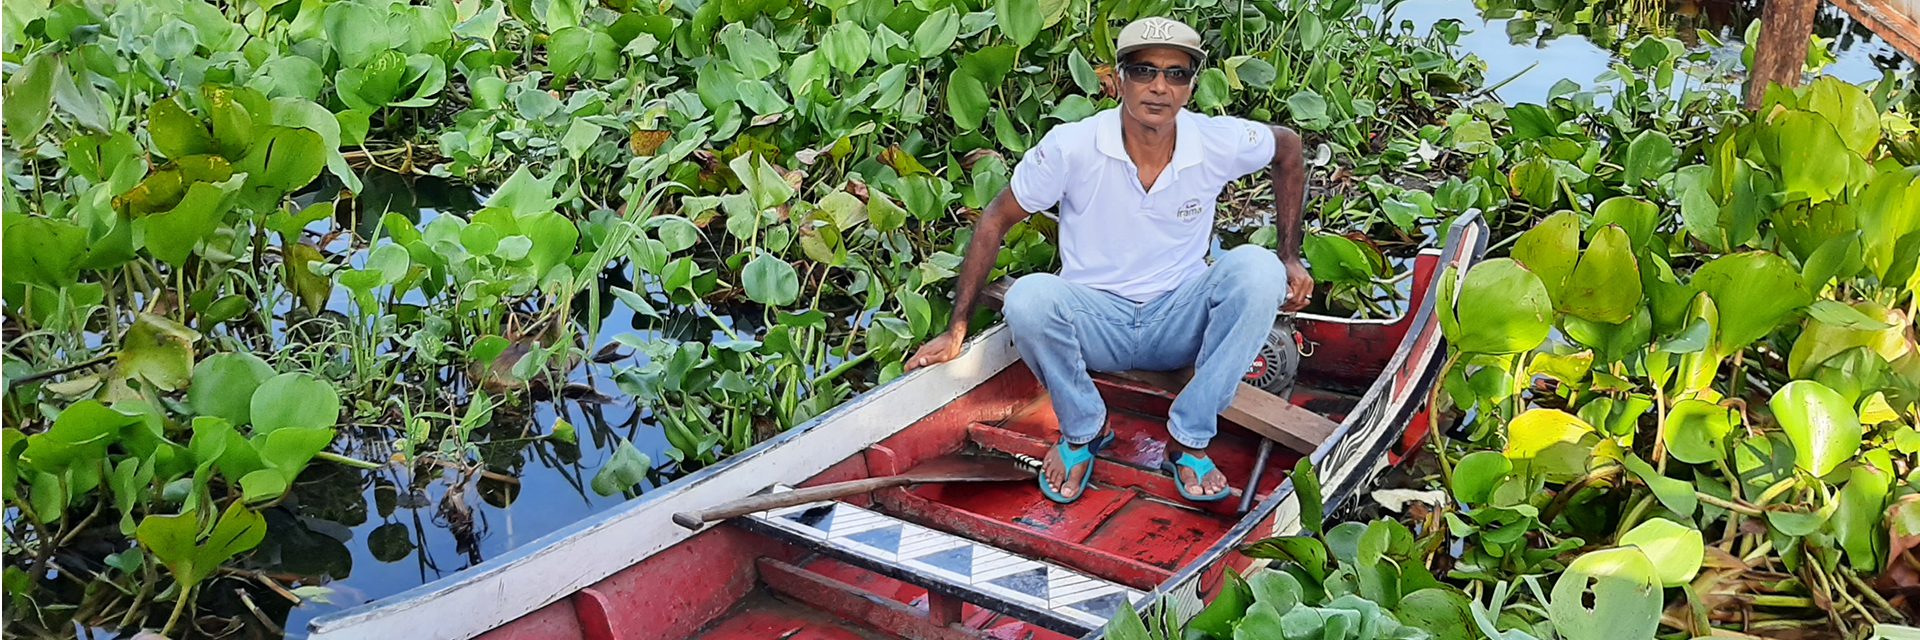 아마존 환경 보호 운동가 Shaji Thomas는 부족을 돕기 위해 깊은 숲으로 노를 저었다.